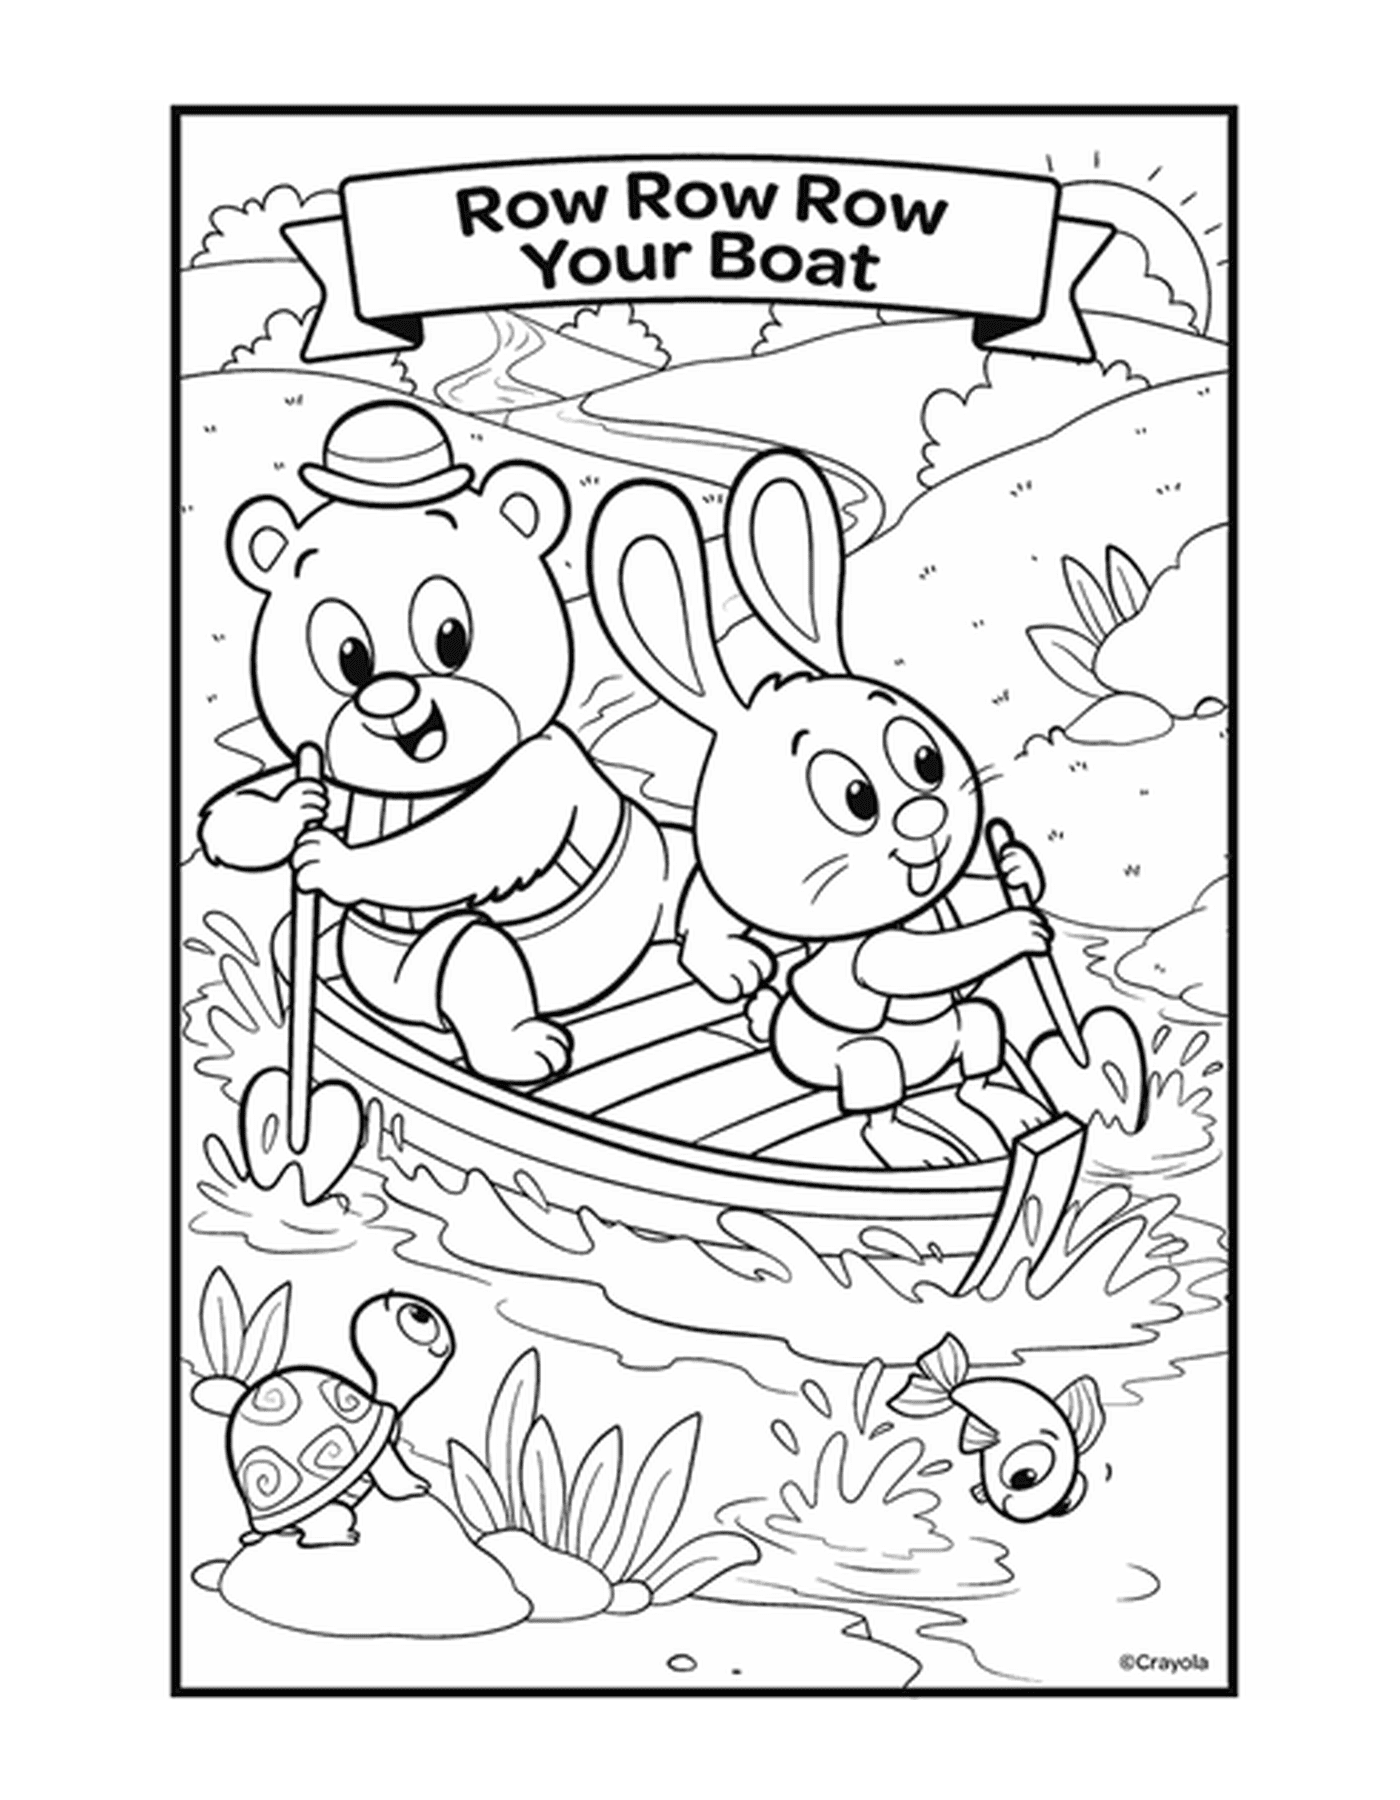  La figura Row, Row, Row Your Boat con due animali in una barca sull'acqua 